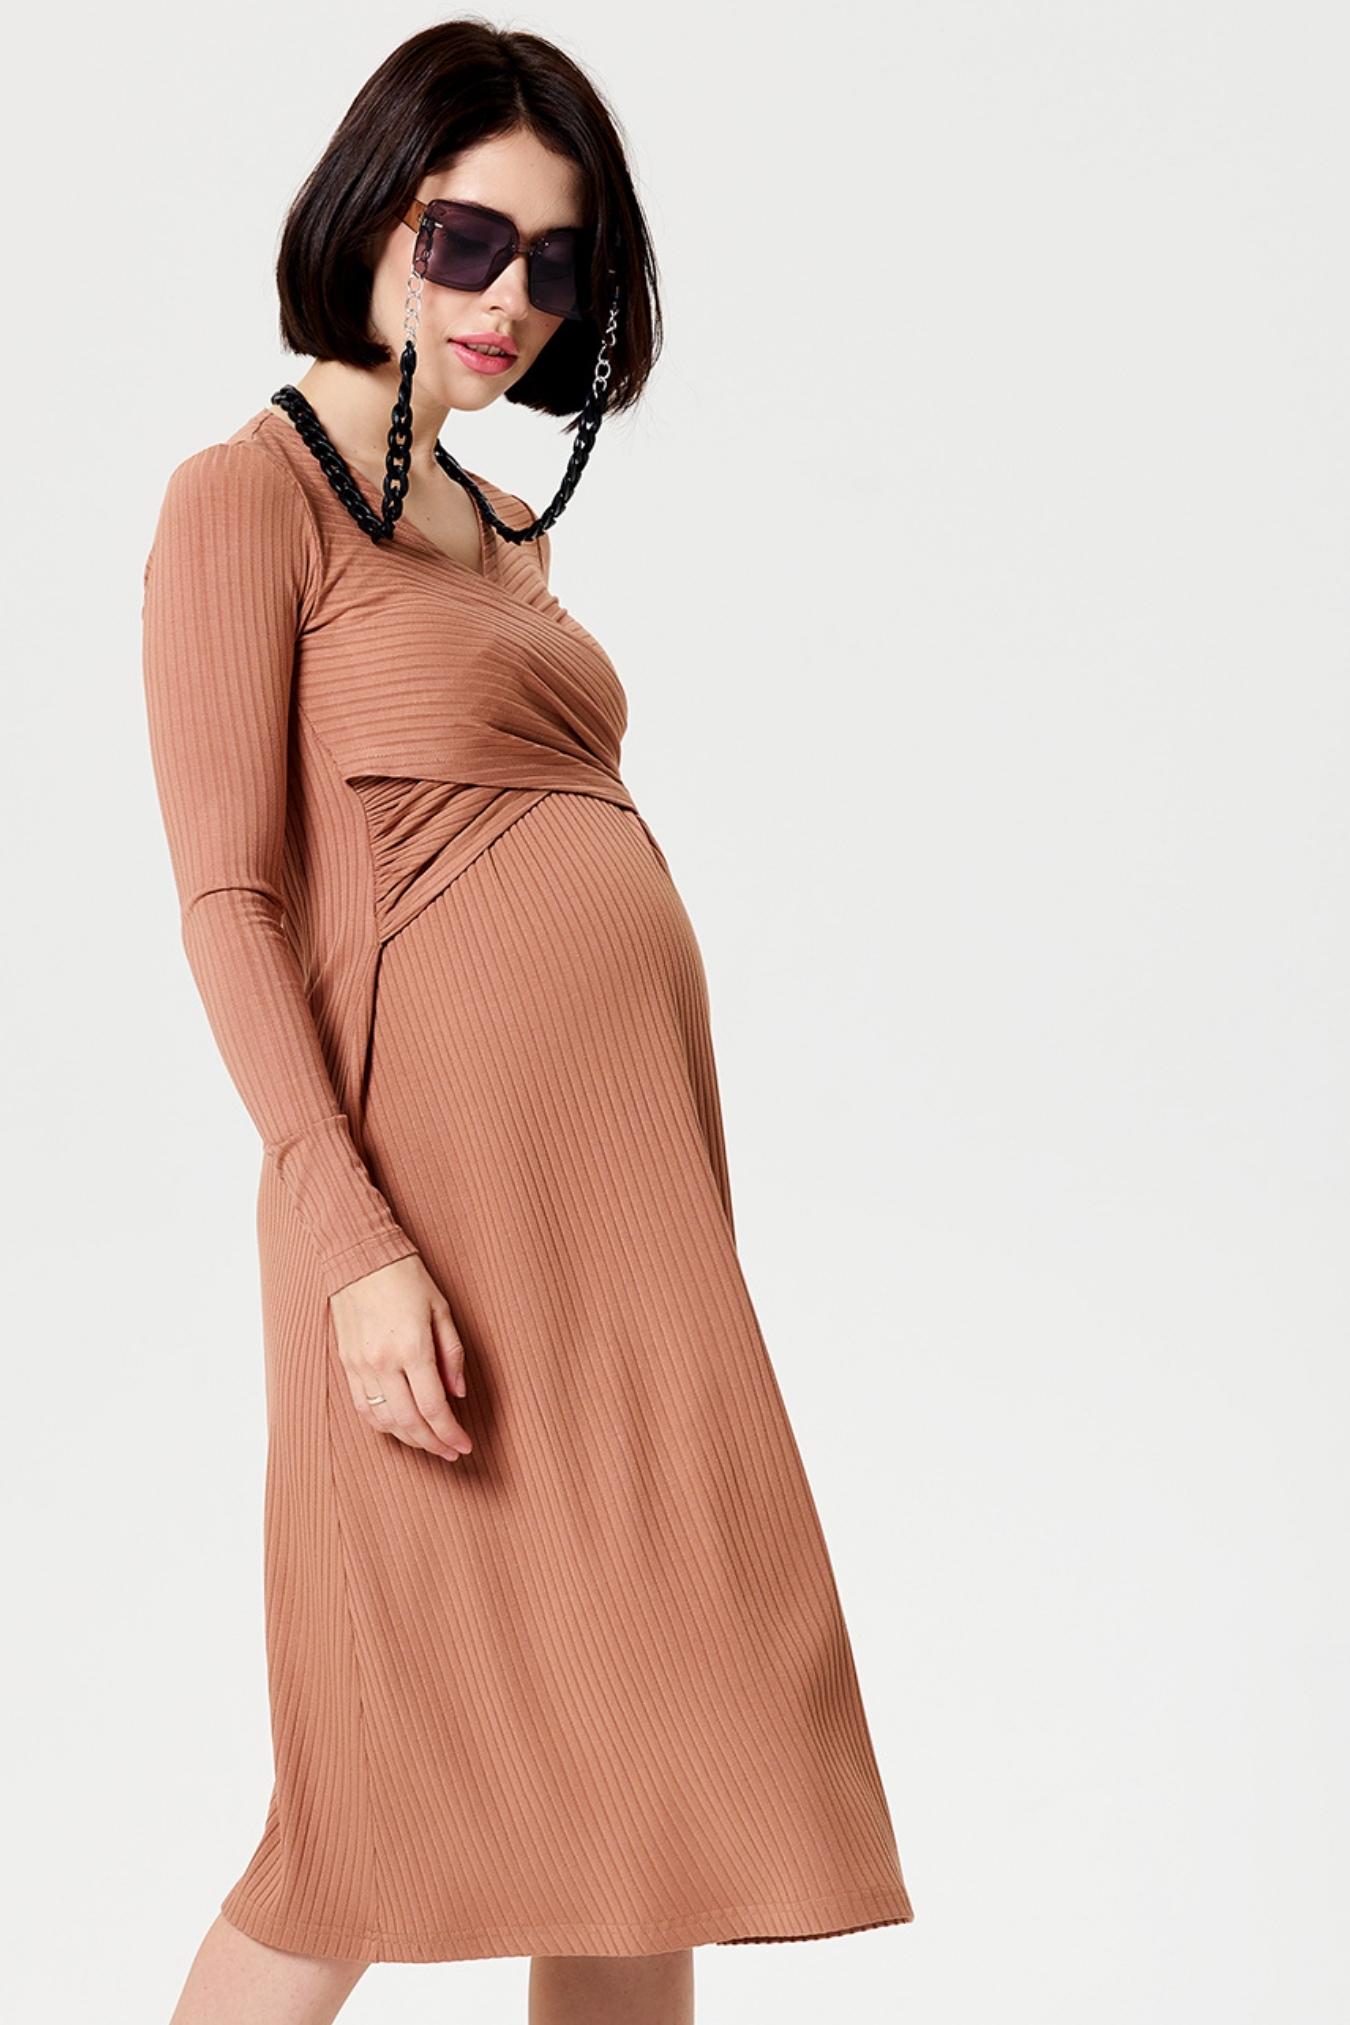 Платье для беременных и кормящих мам повседневное домашнее одежда для кормления грудью в офис / Happy Moms